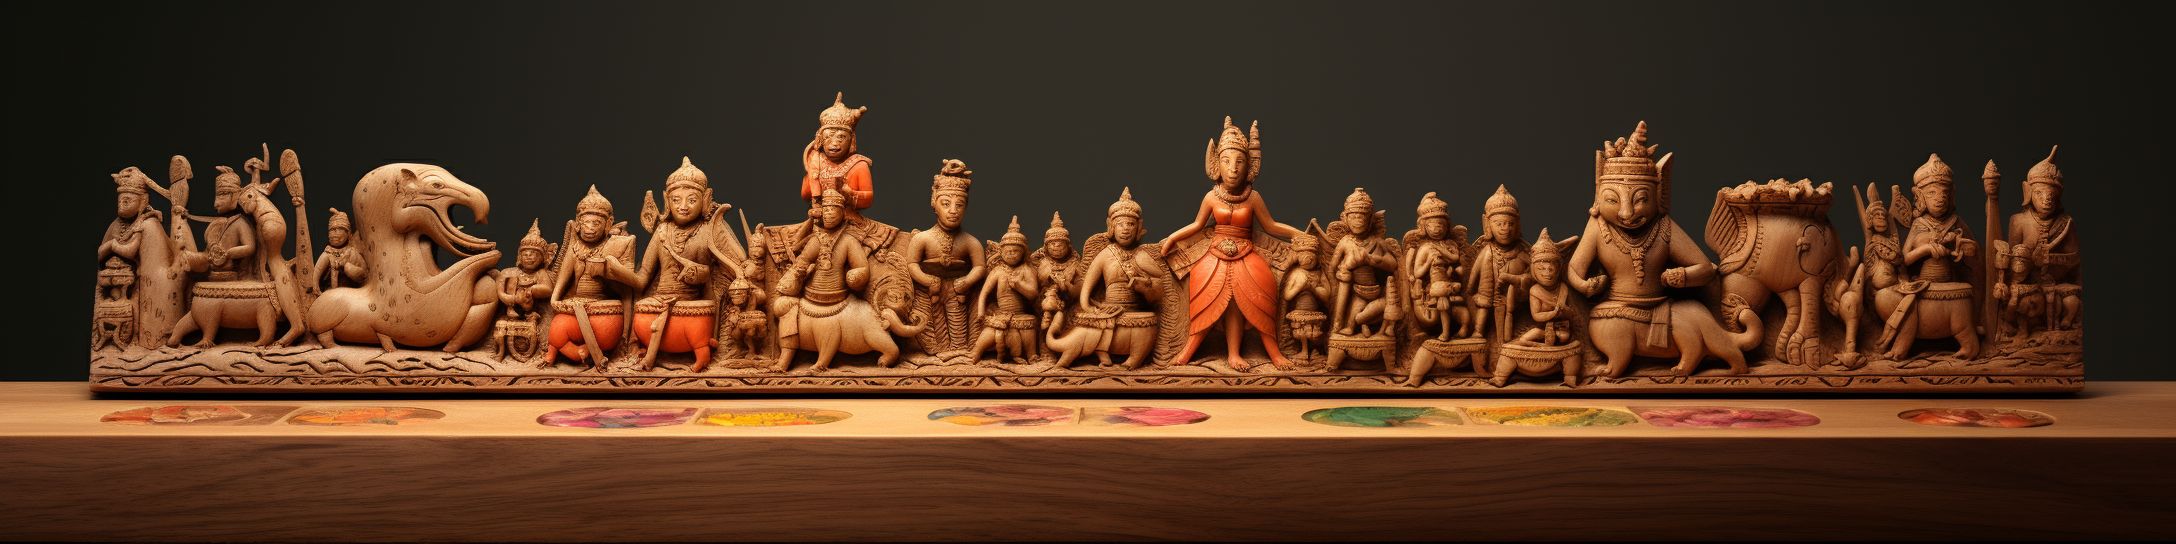 Le Chaturanga : les pièces et leur signification dans la culture indienne